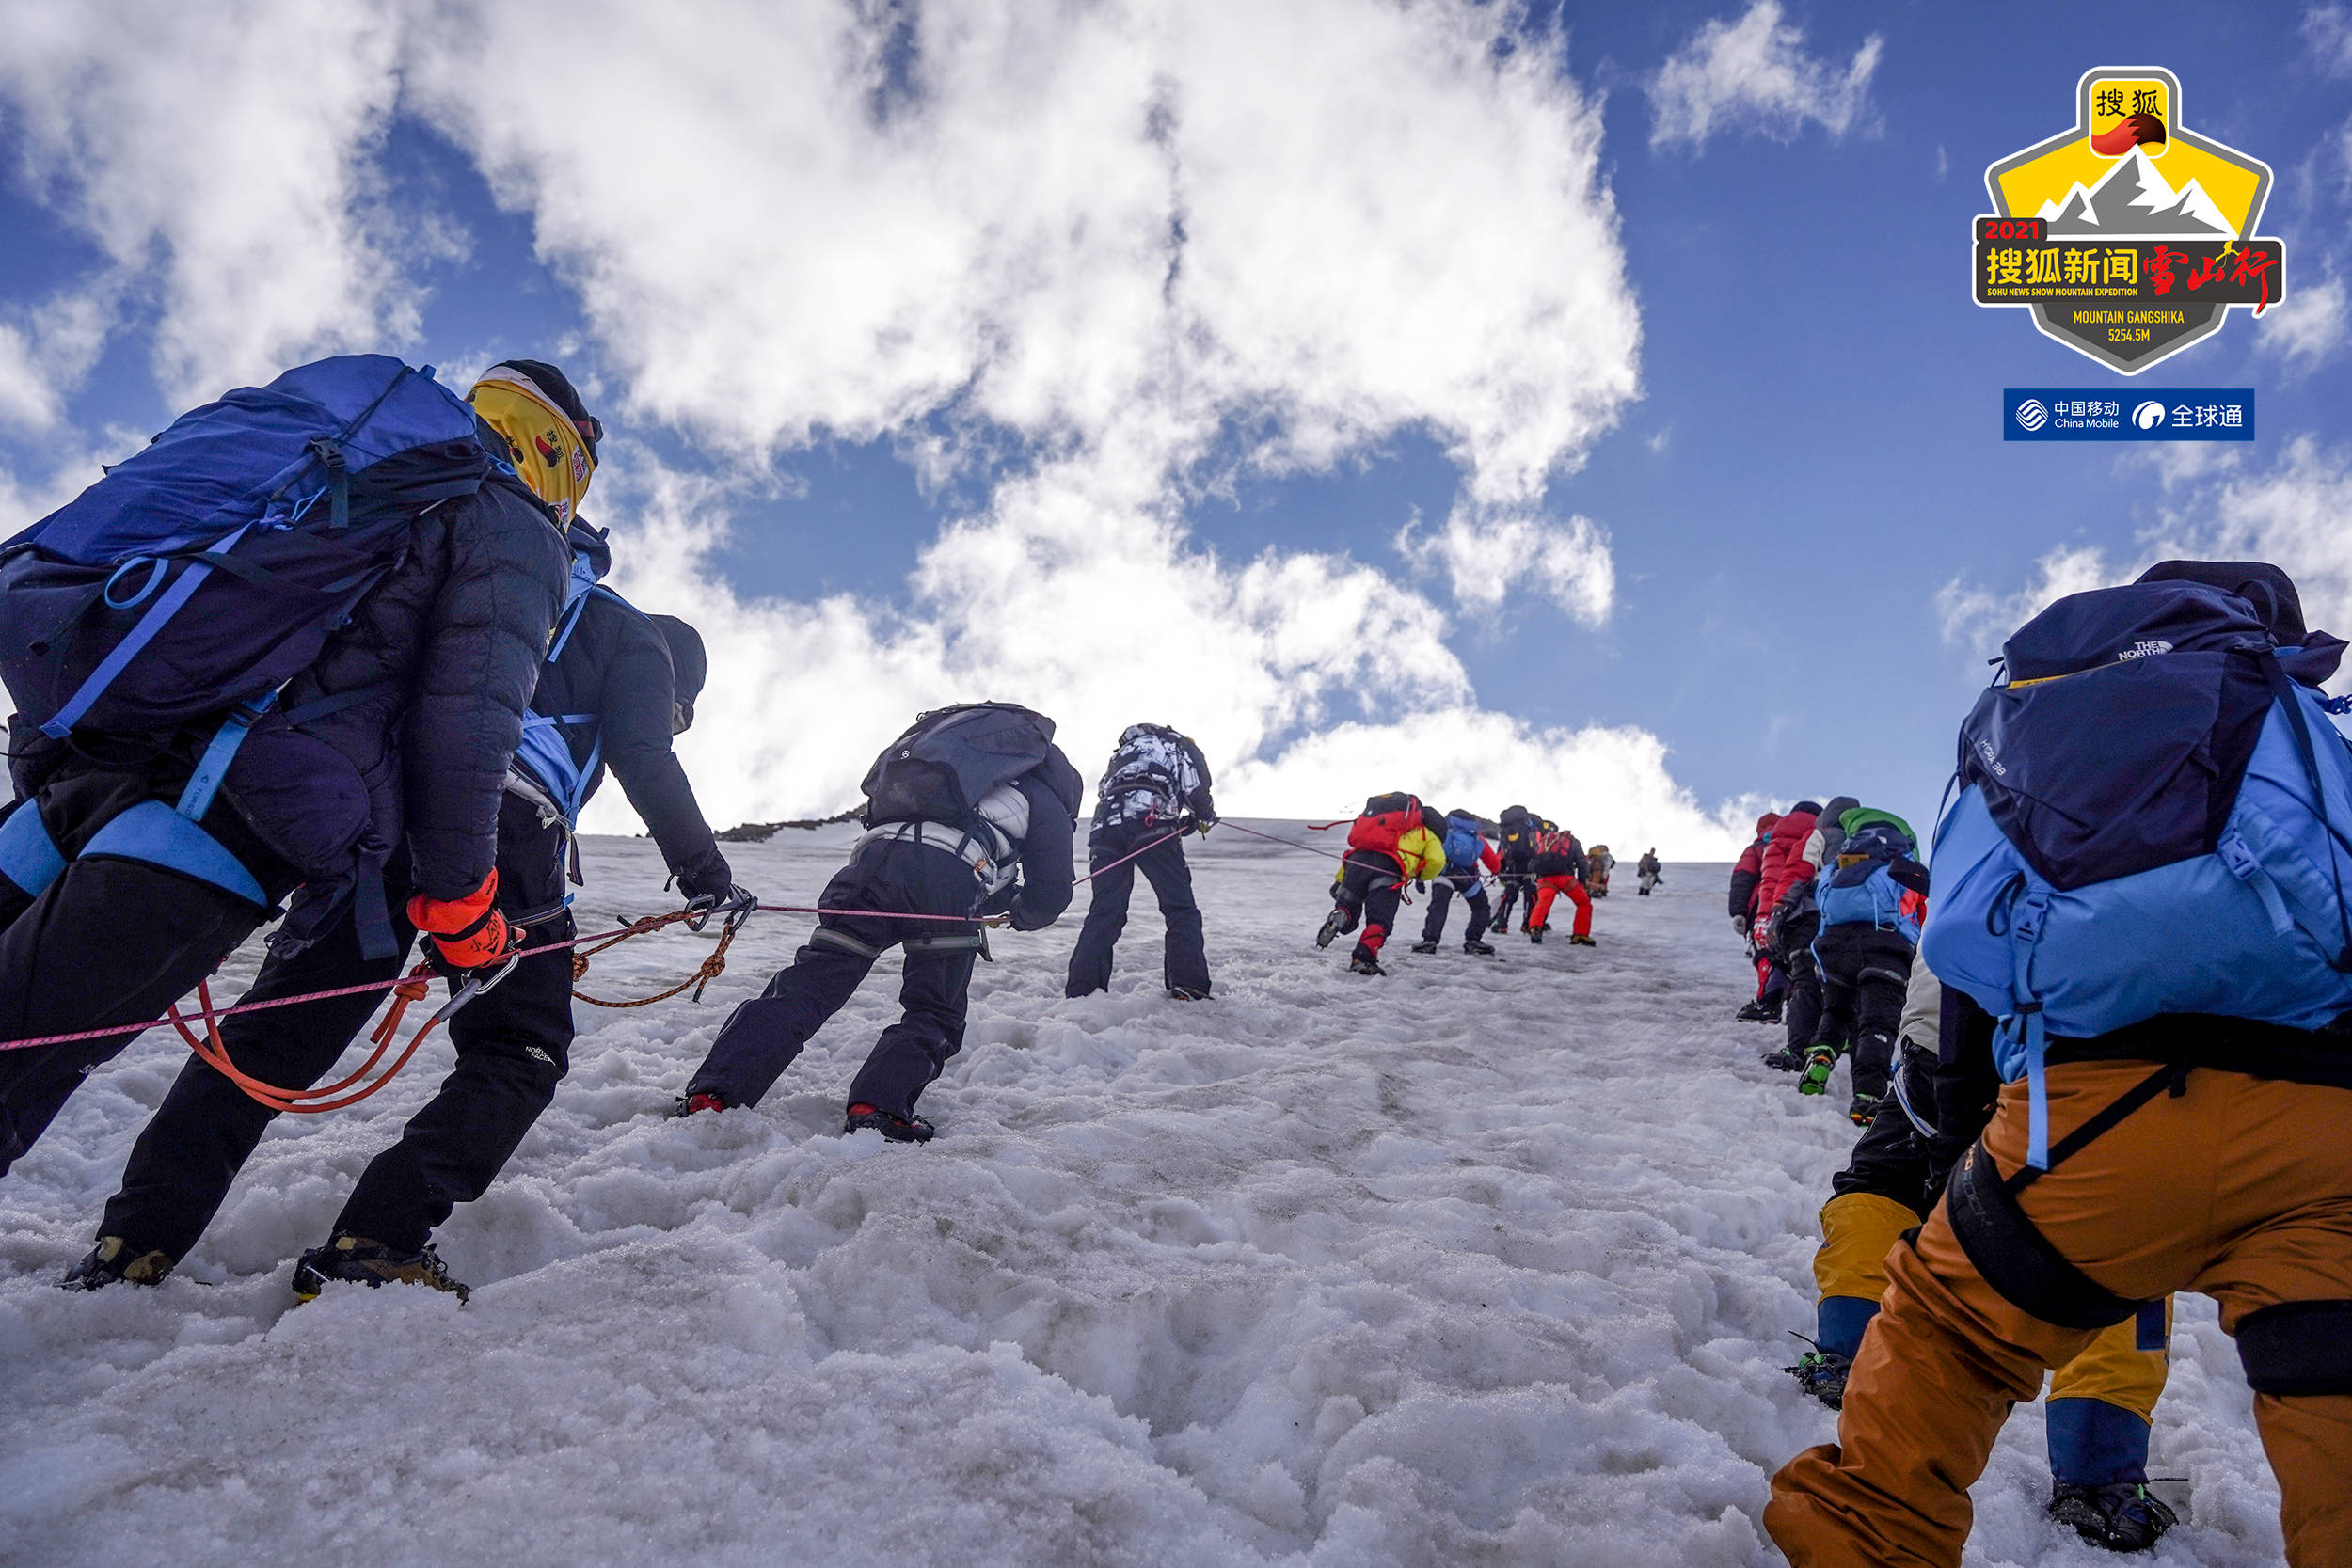 搜狐登山队登至海拔5100米处直播间人气值突破17万 张朝阳